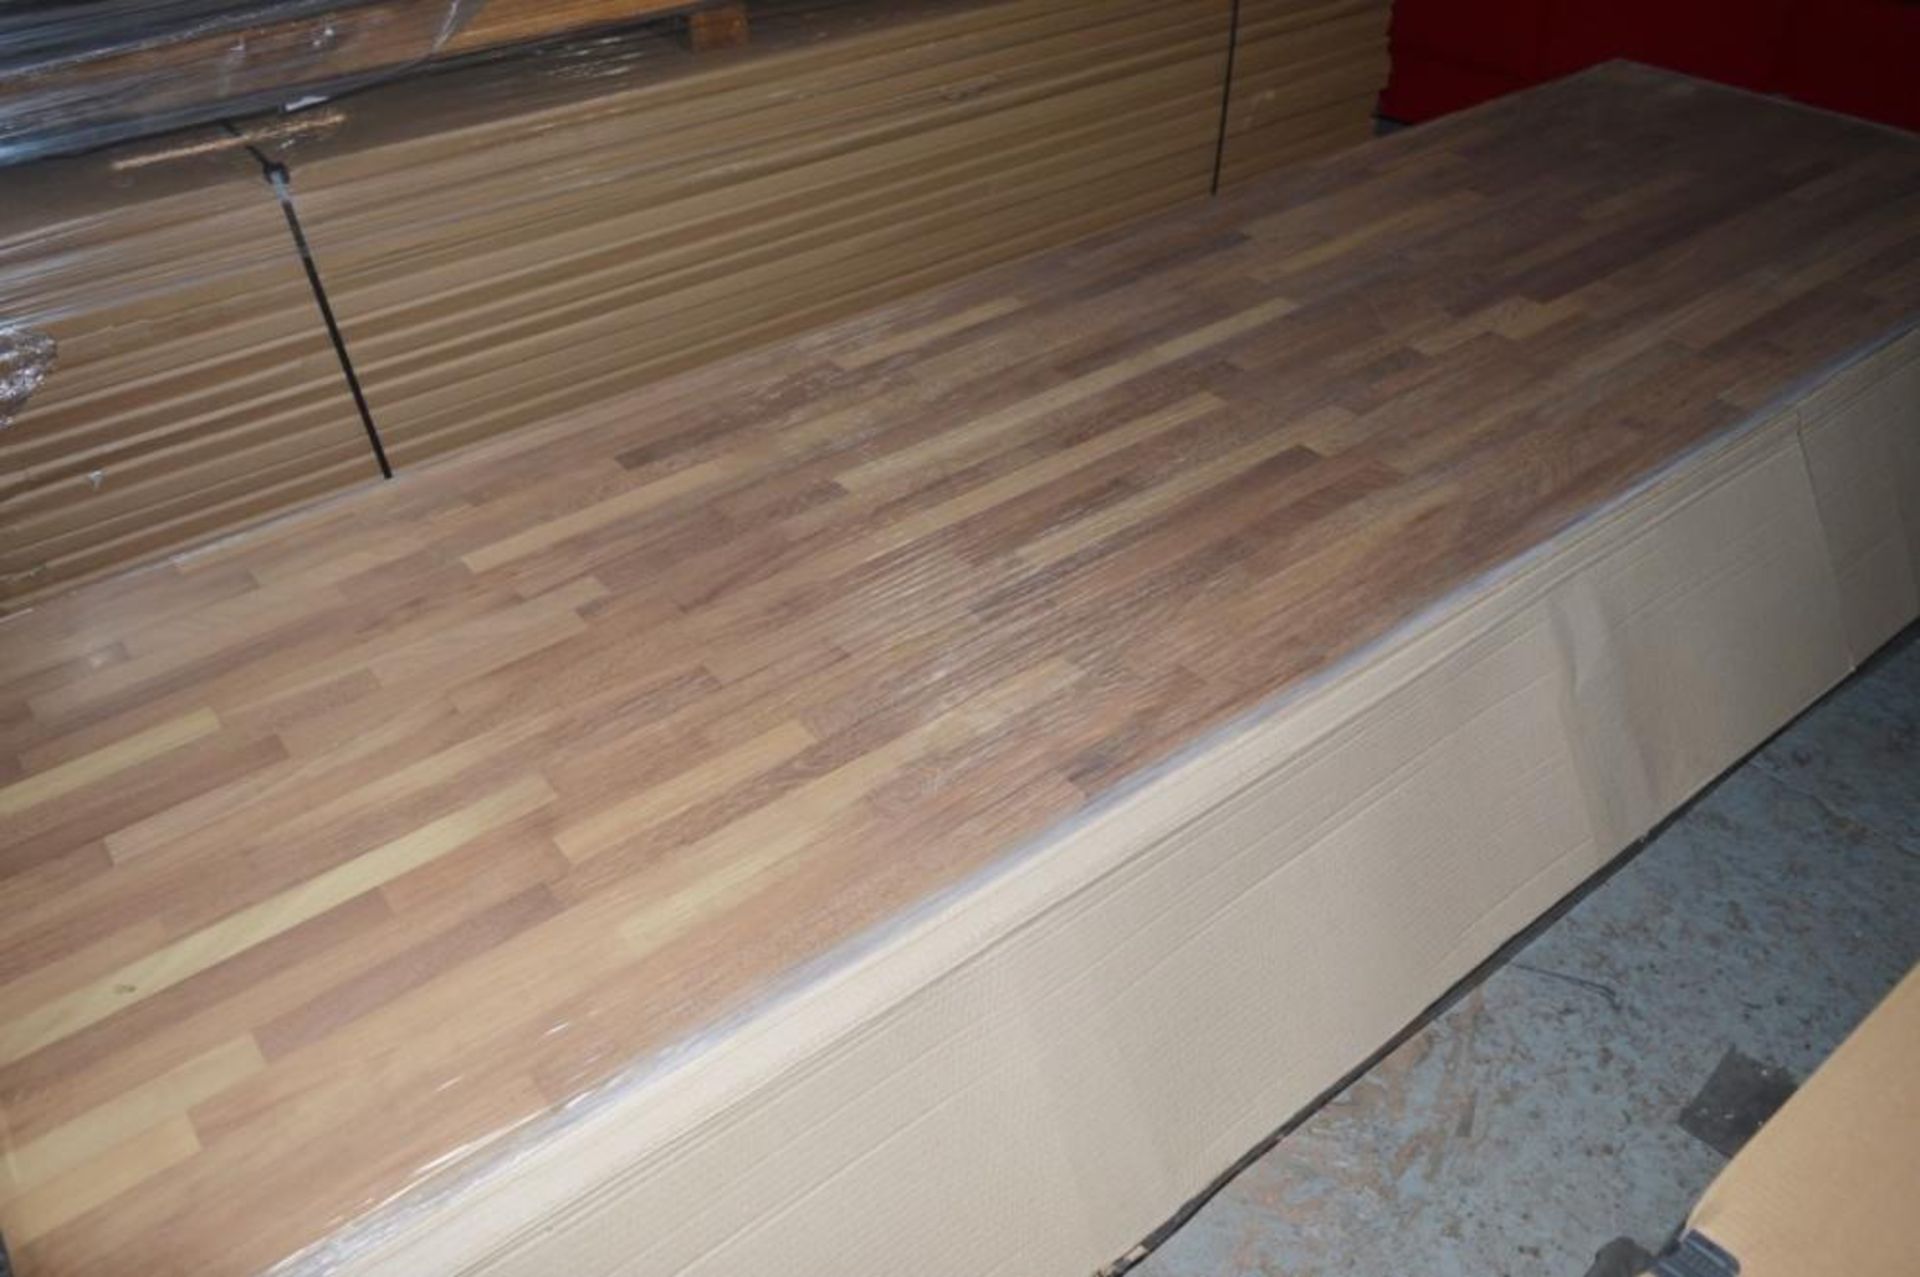 1 x Solid Wood Kitchen Worktop - IROKO - Iroko Blockwood Kitchen Worktop - Size: 3000 x 900 x 32mm - - Image 2 of 4